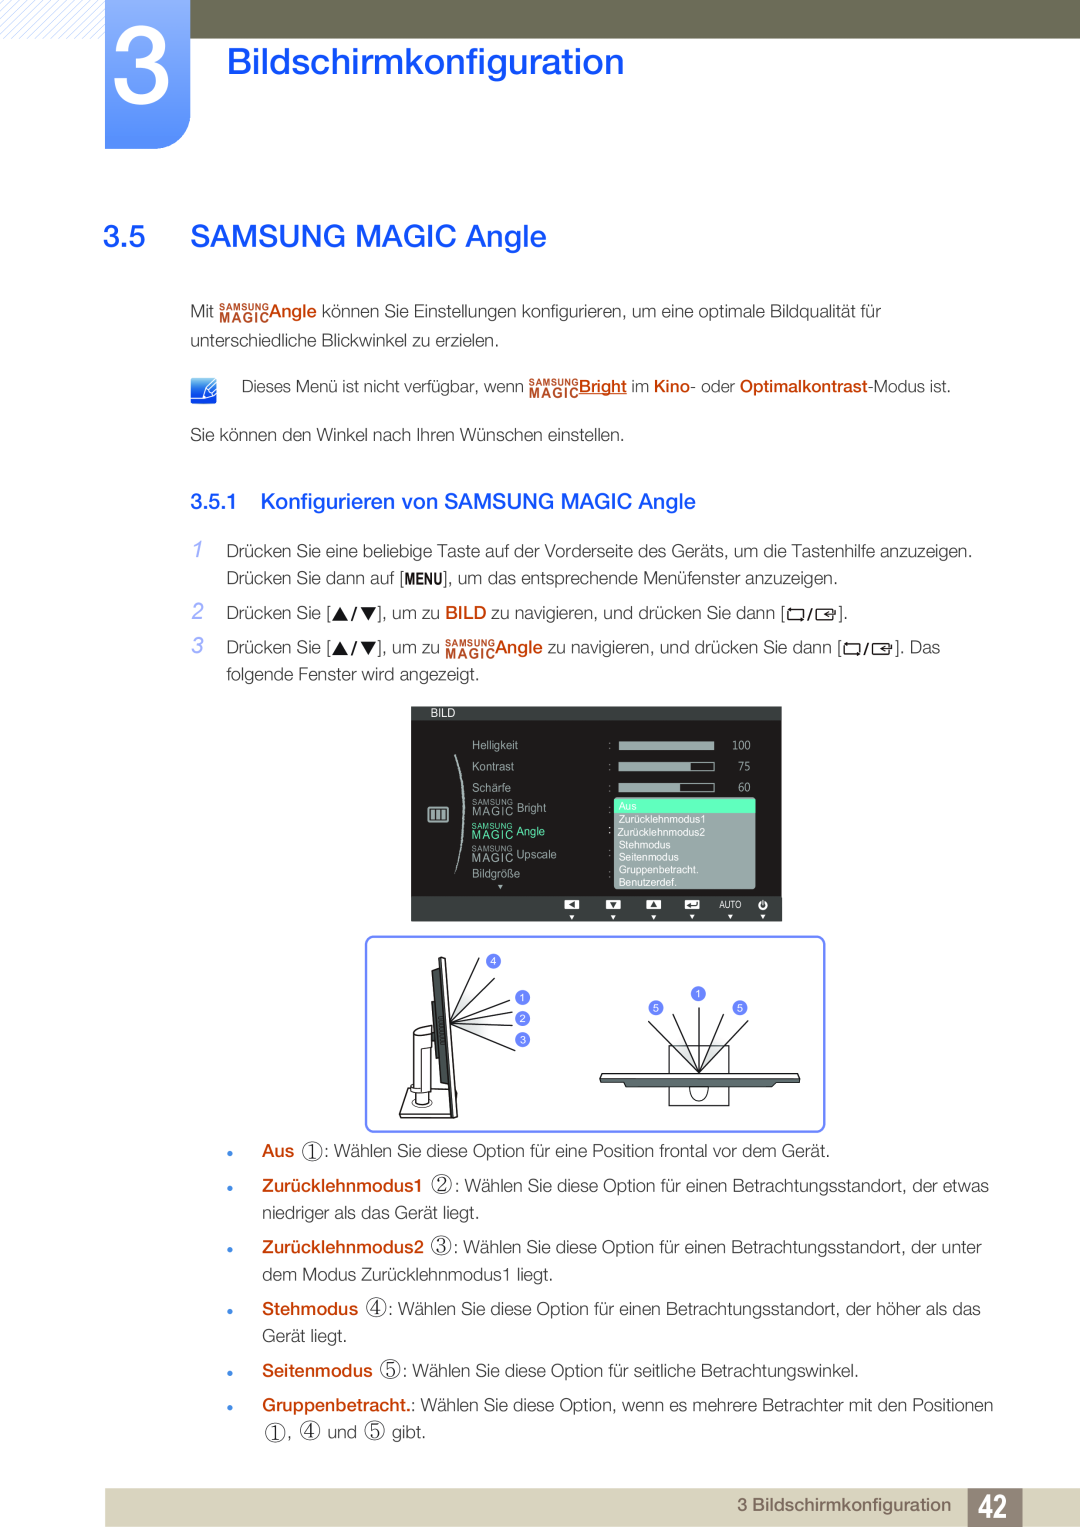 Samsung LS24C45ZMSV/EN, LS19C45KMRV/EN, LS22C45KMSV/EN Konfigurieren von SAMSUNG MAGIC Angle, Bildschirmkonfiguration 